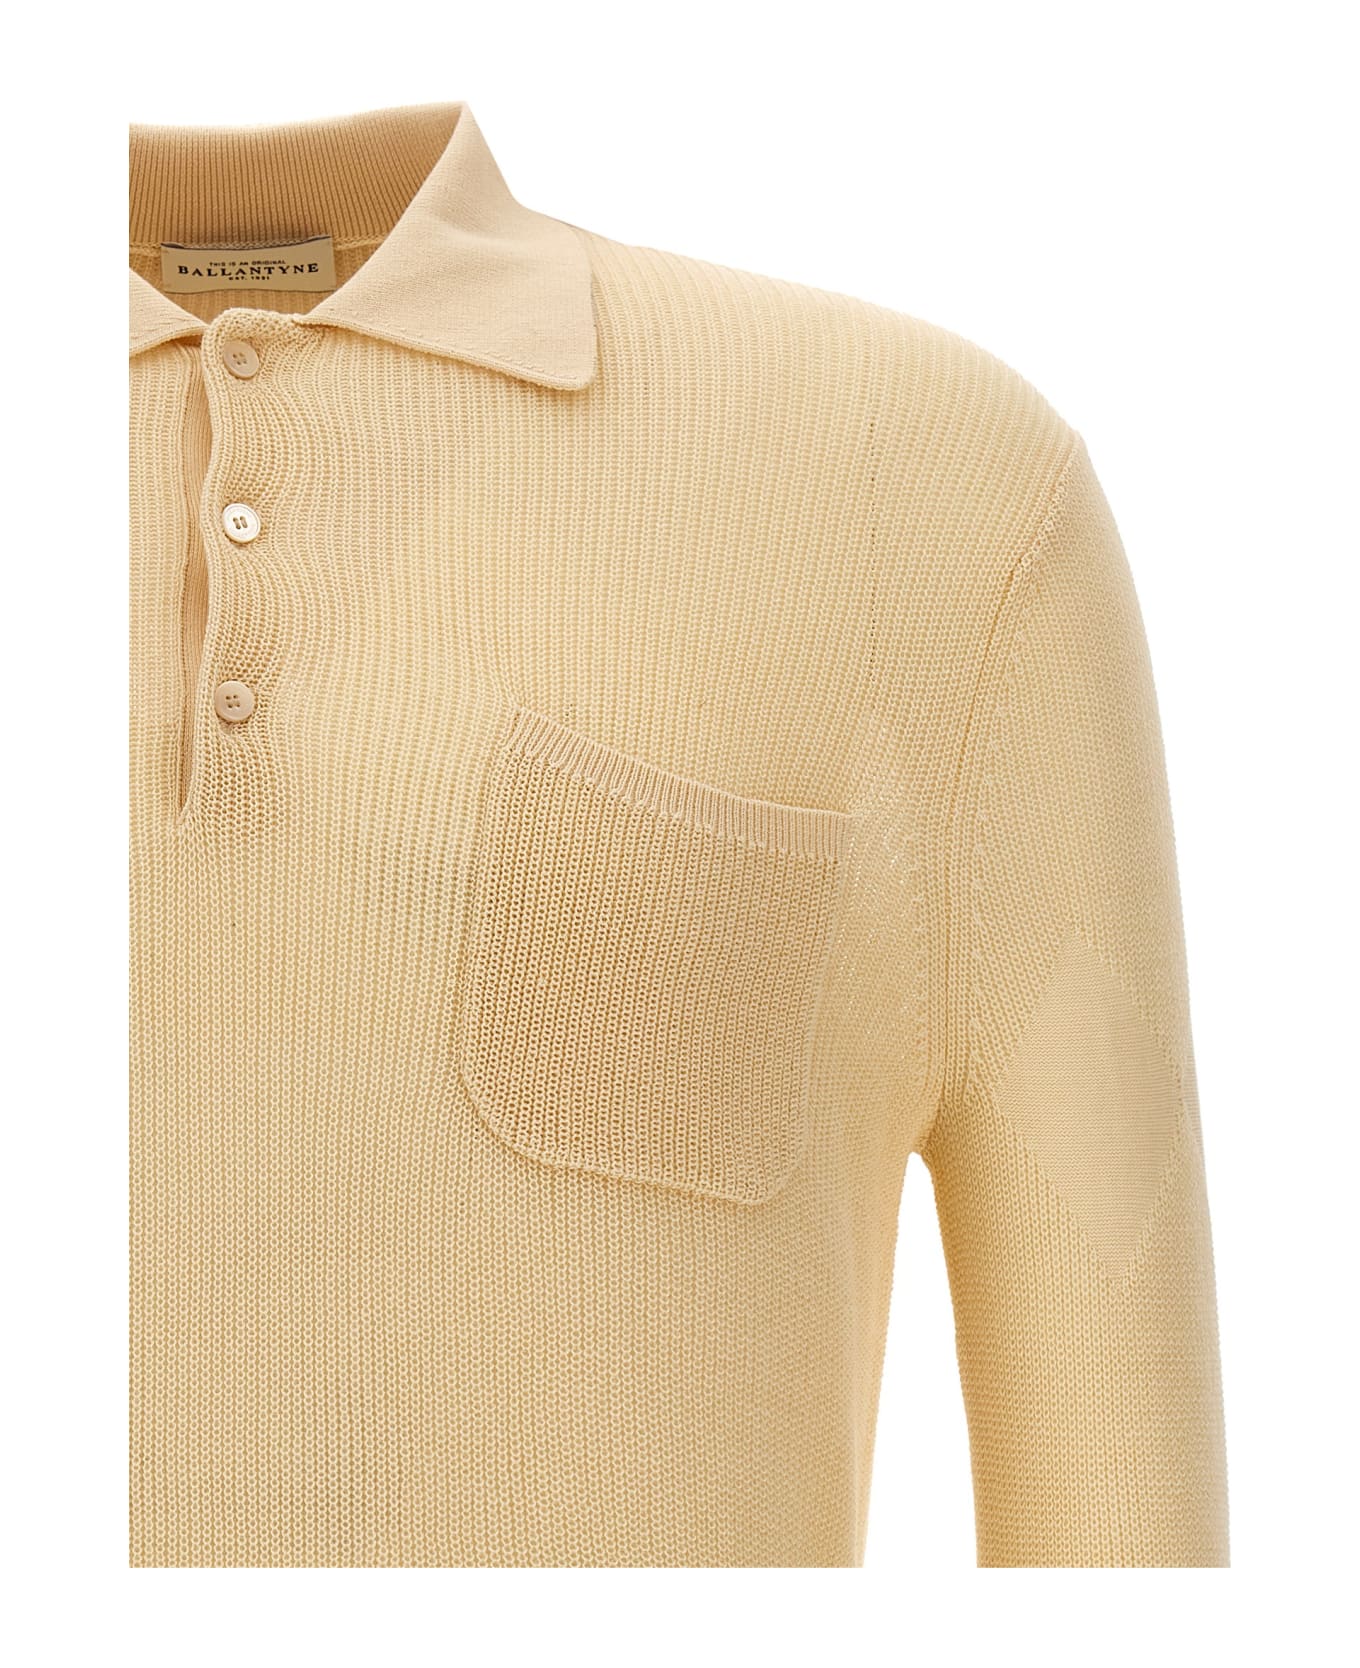 Ballantyne Cotton Knit Polo Shirt - Beige ポロシャツ